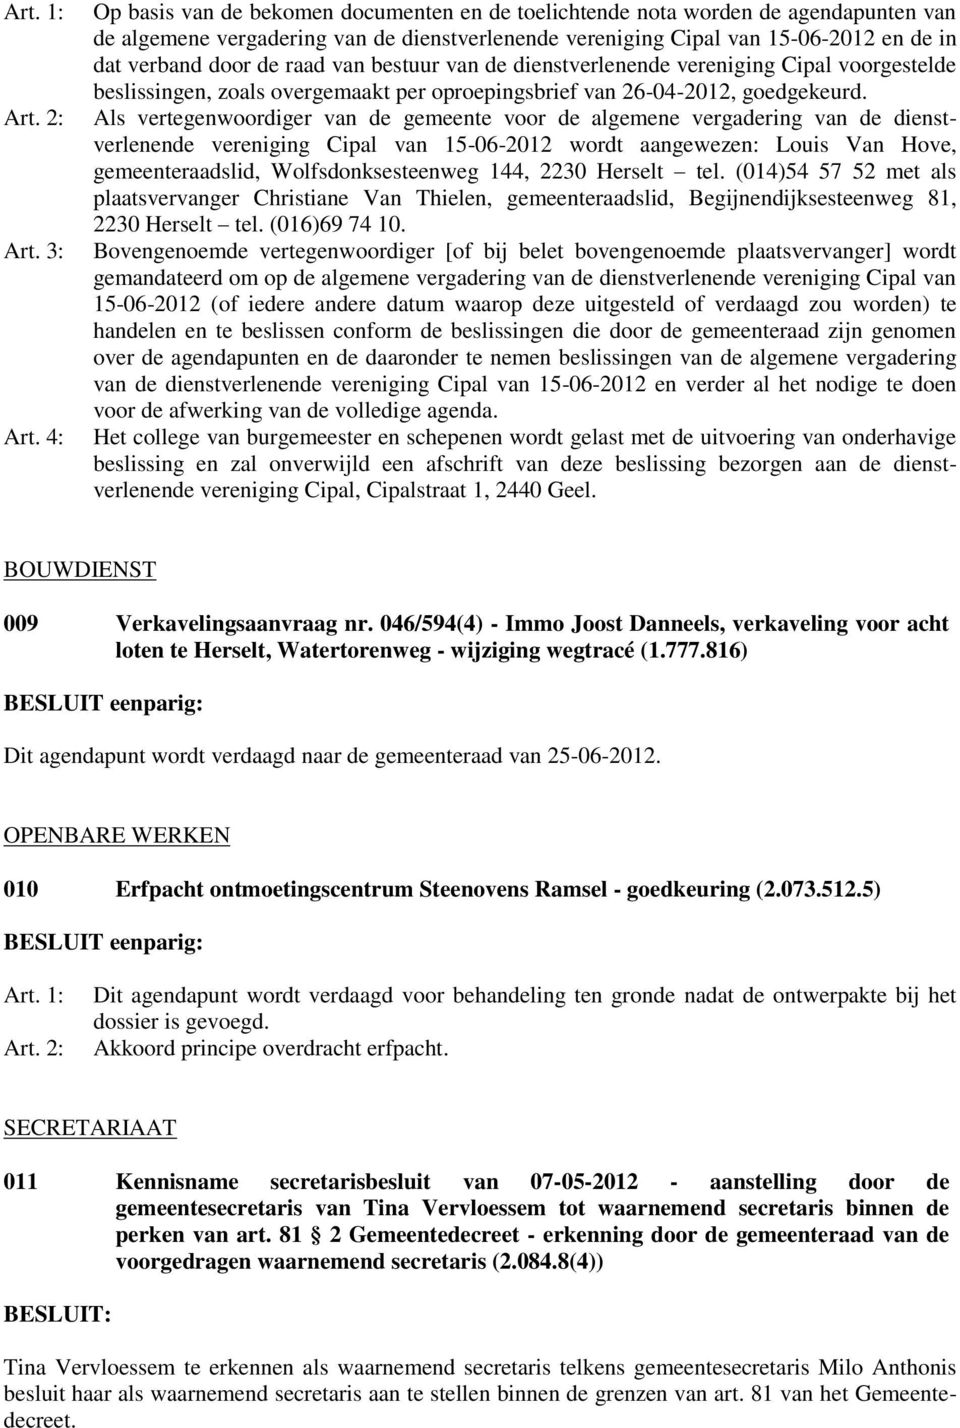 raad van bestuur van de dienstverlenende vereniging Cipal voorgestelde beslissingen, zoals overgemaakt per oproepingsbrief van 26-04-2012, goedgekeurd.